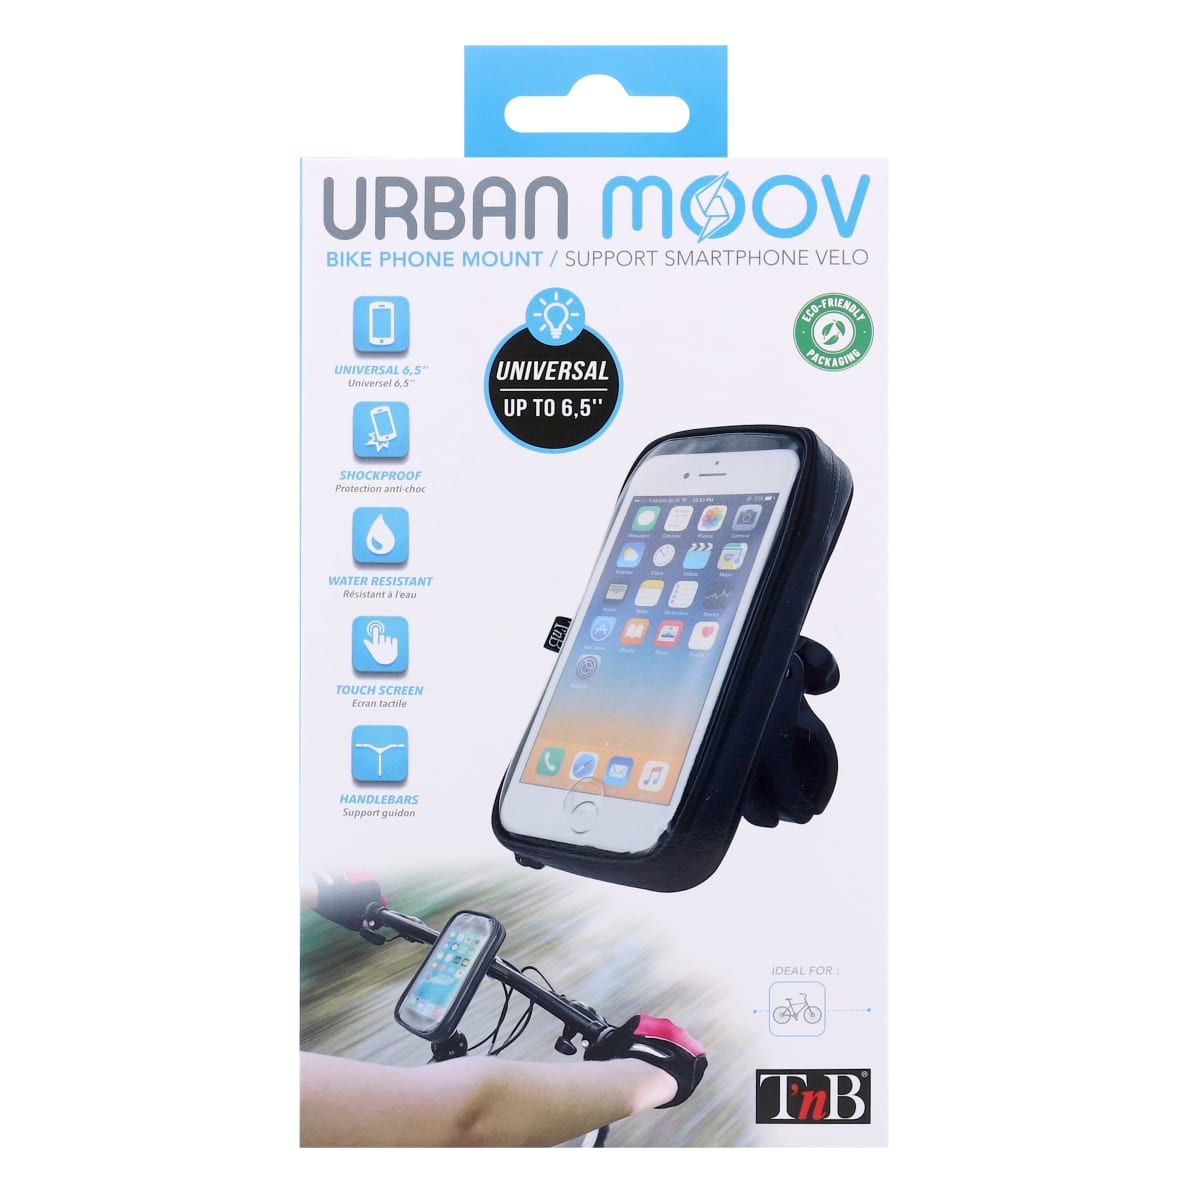 Suporte Universal Smartphone URBAN MOOV TNB para guiador - Norauto